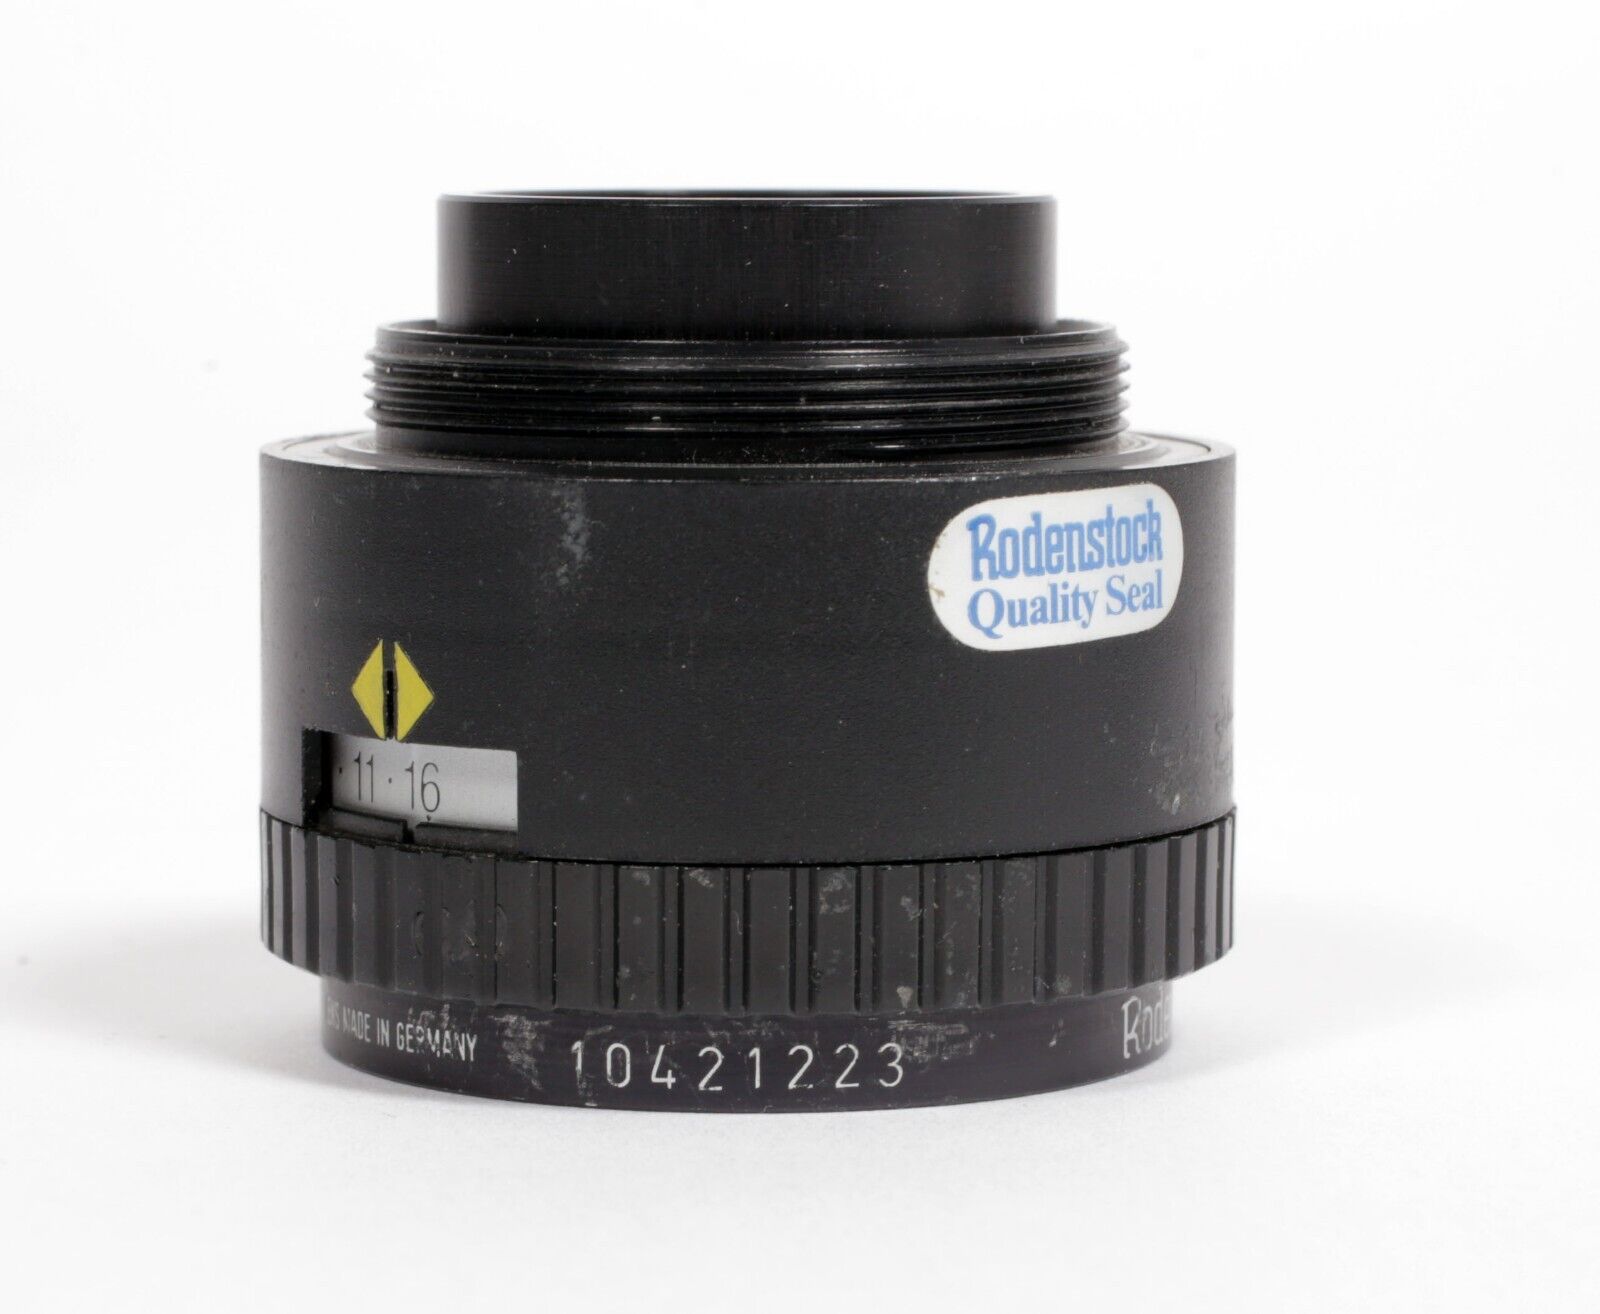 Rodenstock APO Rodagon 50mm F2.8 Enlarger Lens for 35mm negatives #223 |  CatLABS